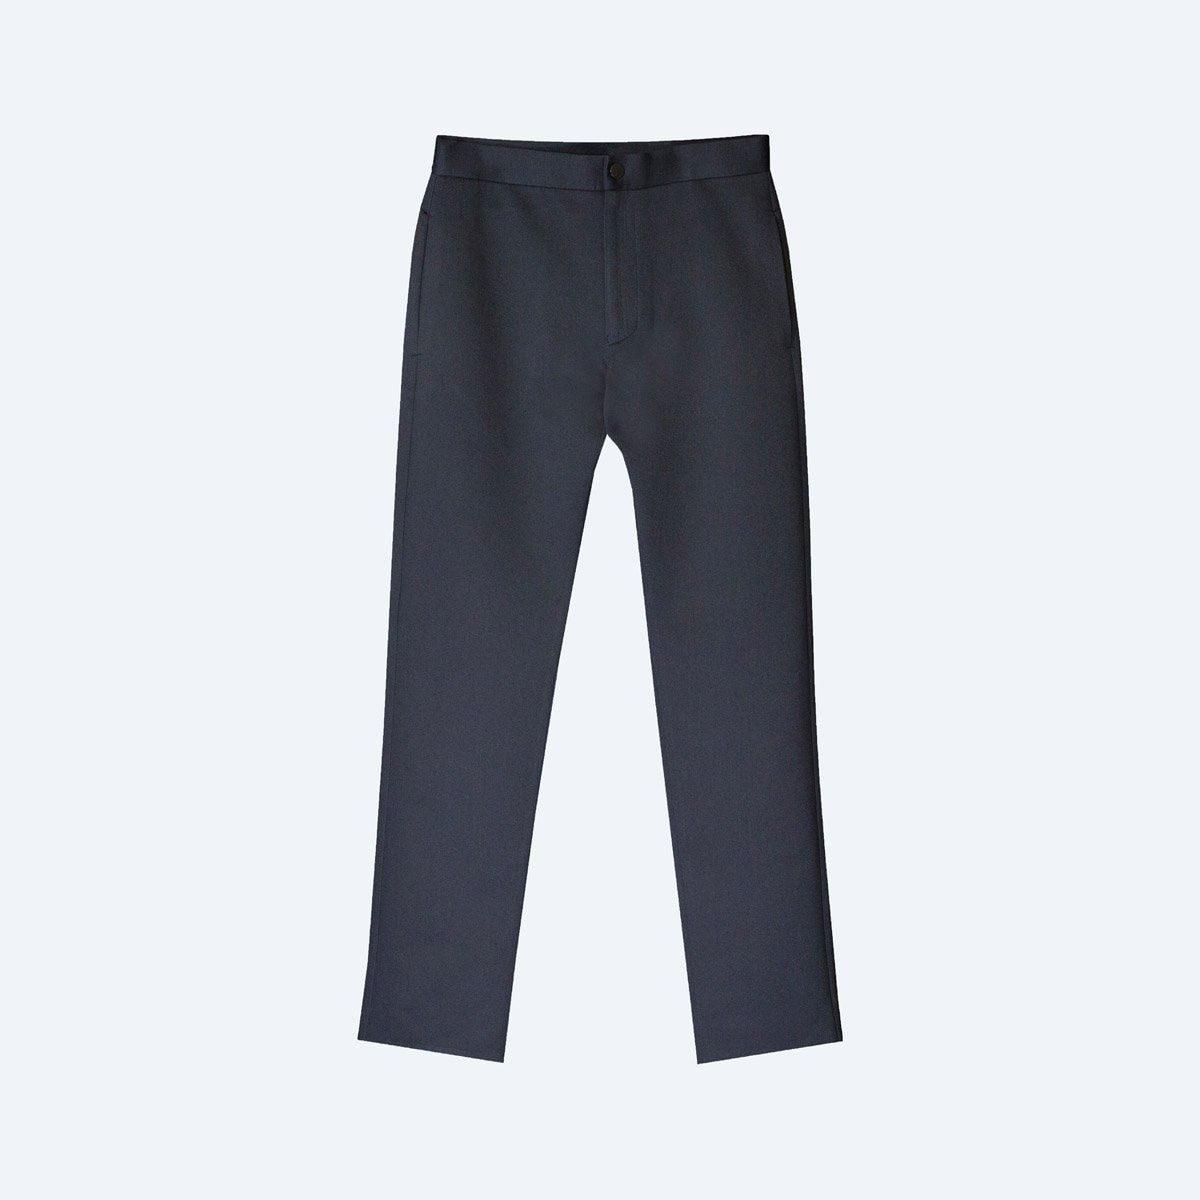 BOSS - Slim-fit trousers in wrinkle-resistant melange fabric